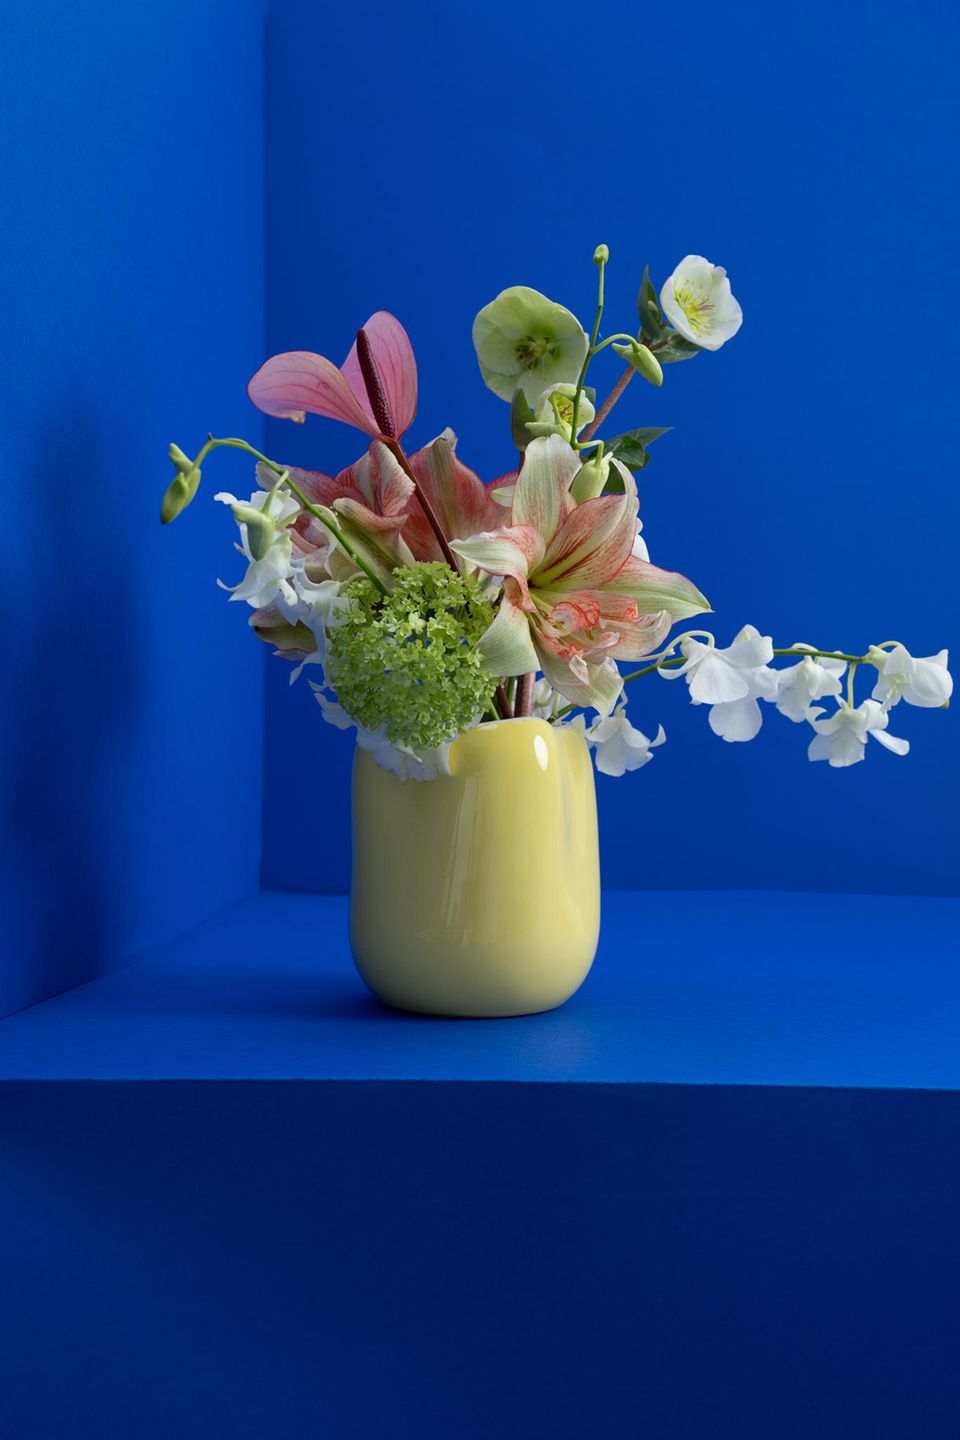 Gelbe Vase mit Blumenstrauß vor blauem Hintergrund